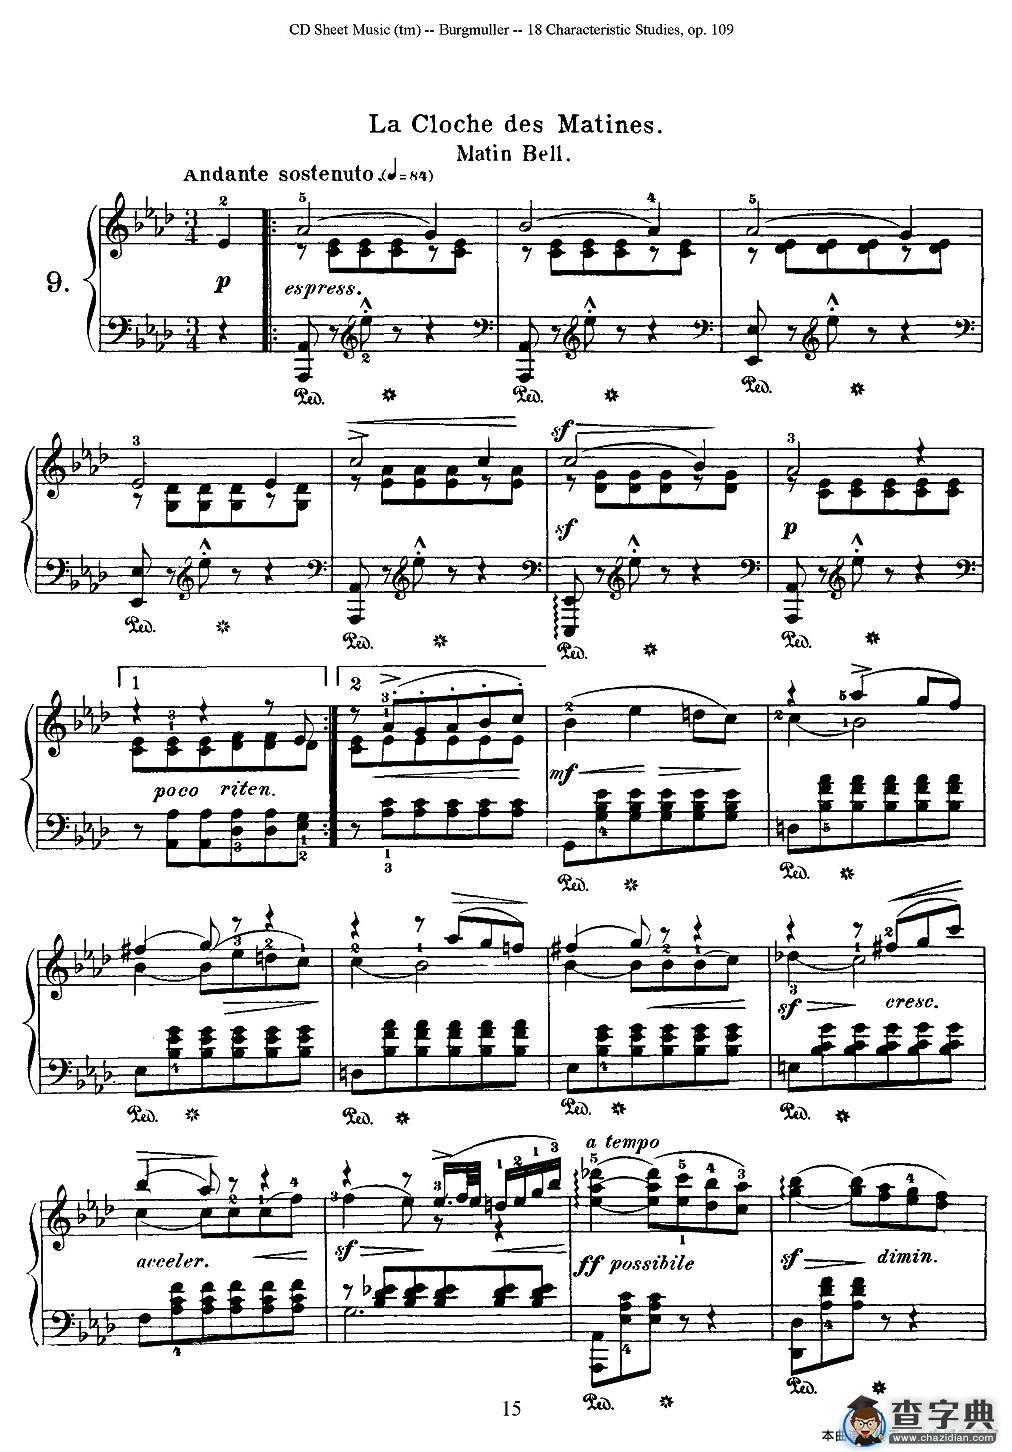 Burgmuller - 18 Characteristic Studies（9）钢琴谱